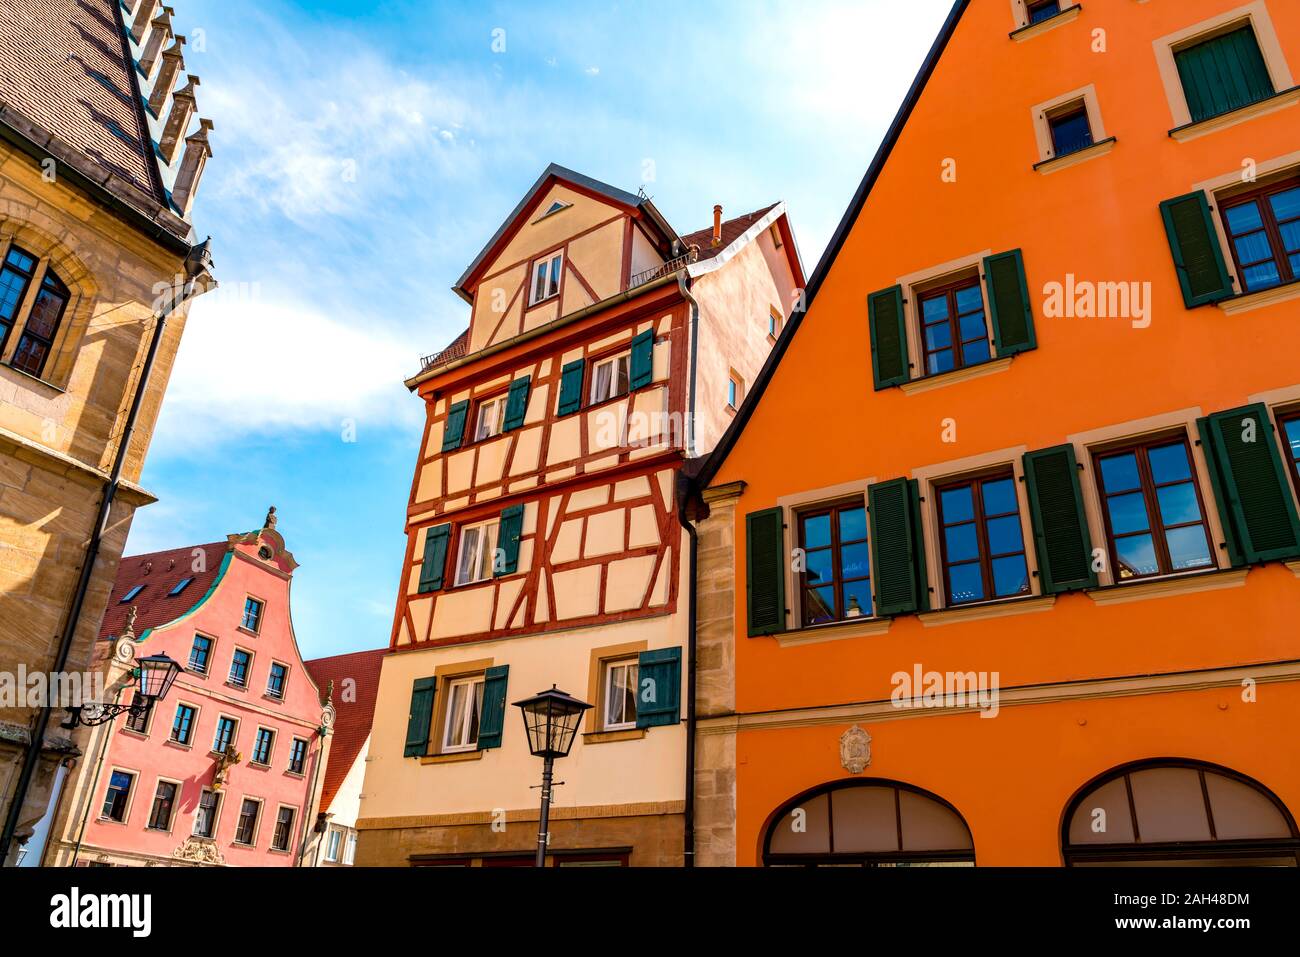 Alemania, Baviera, Weissenburg, histórica arquitectura medieval de la ciudad alemana Foto de stock